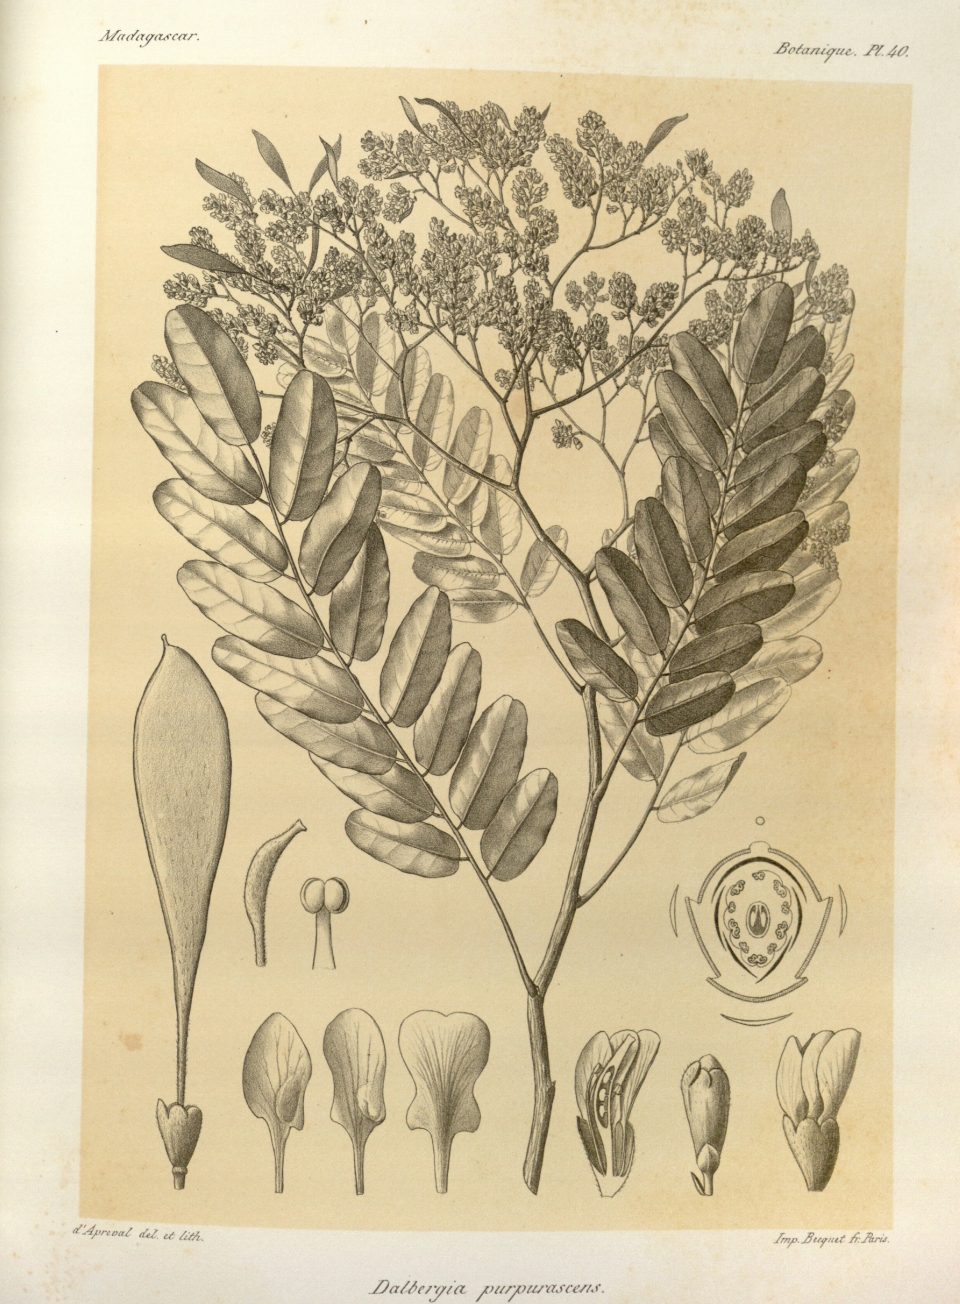 Dalbergia purpurascens